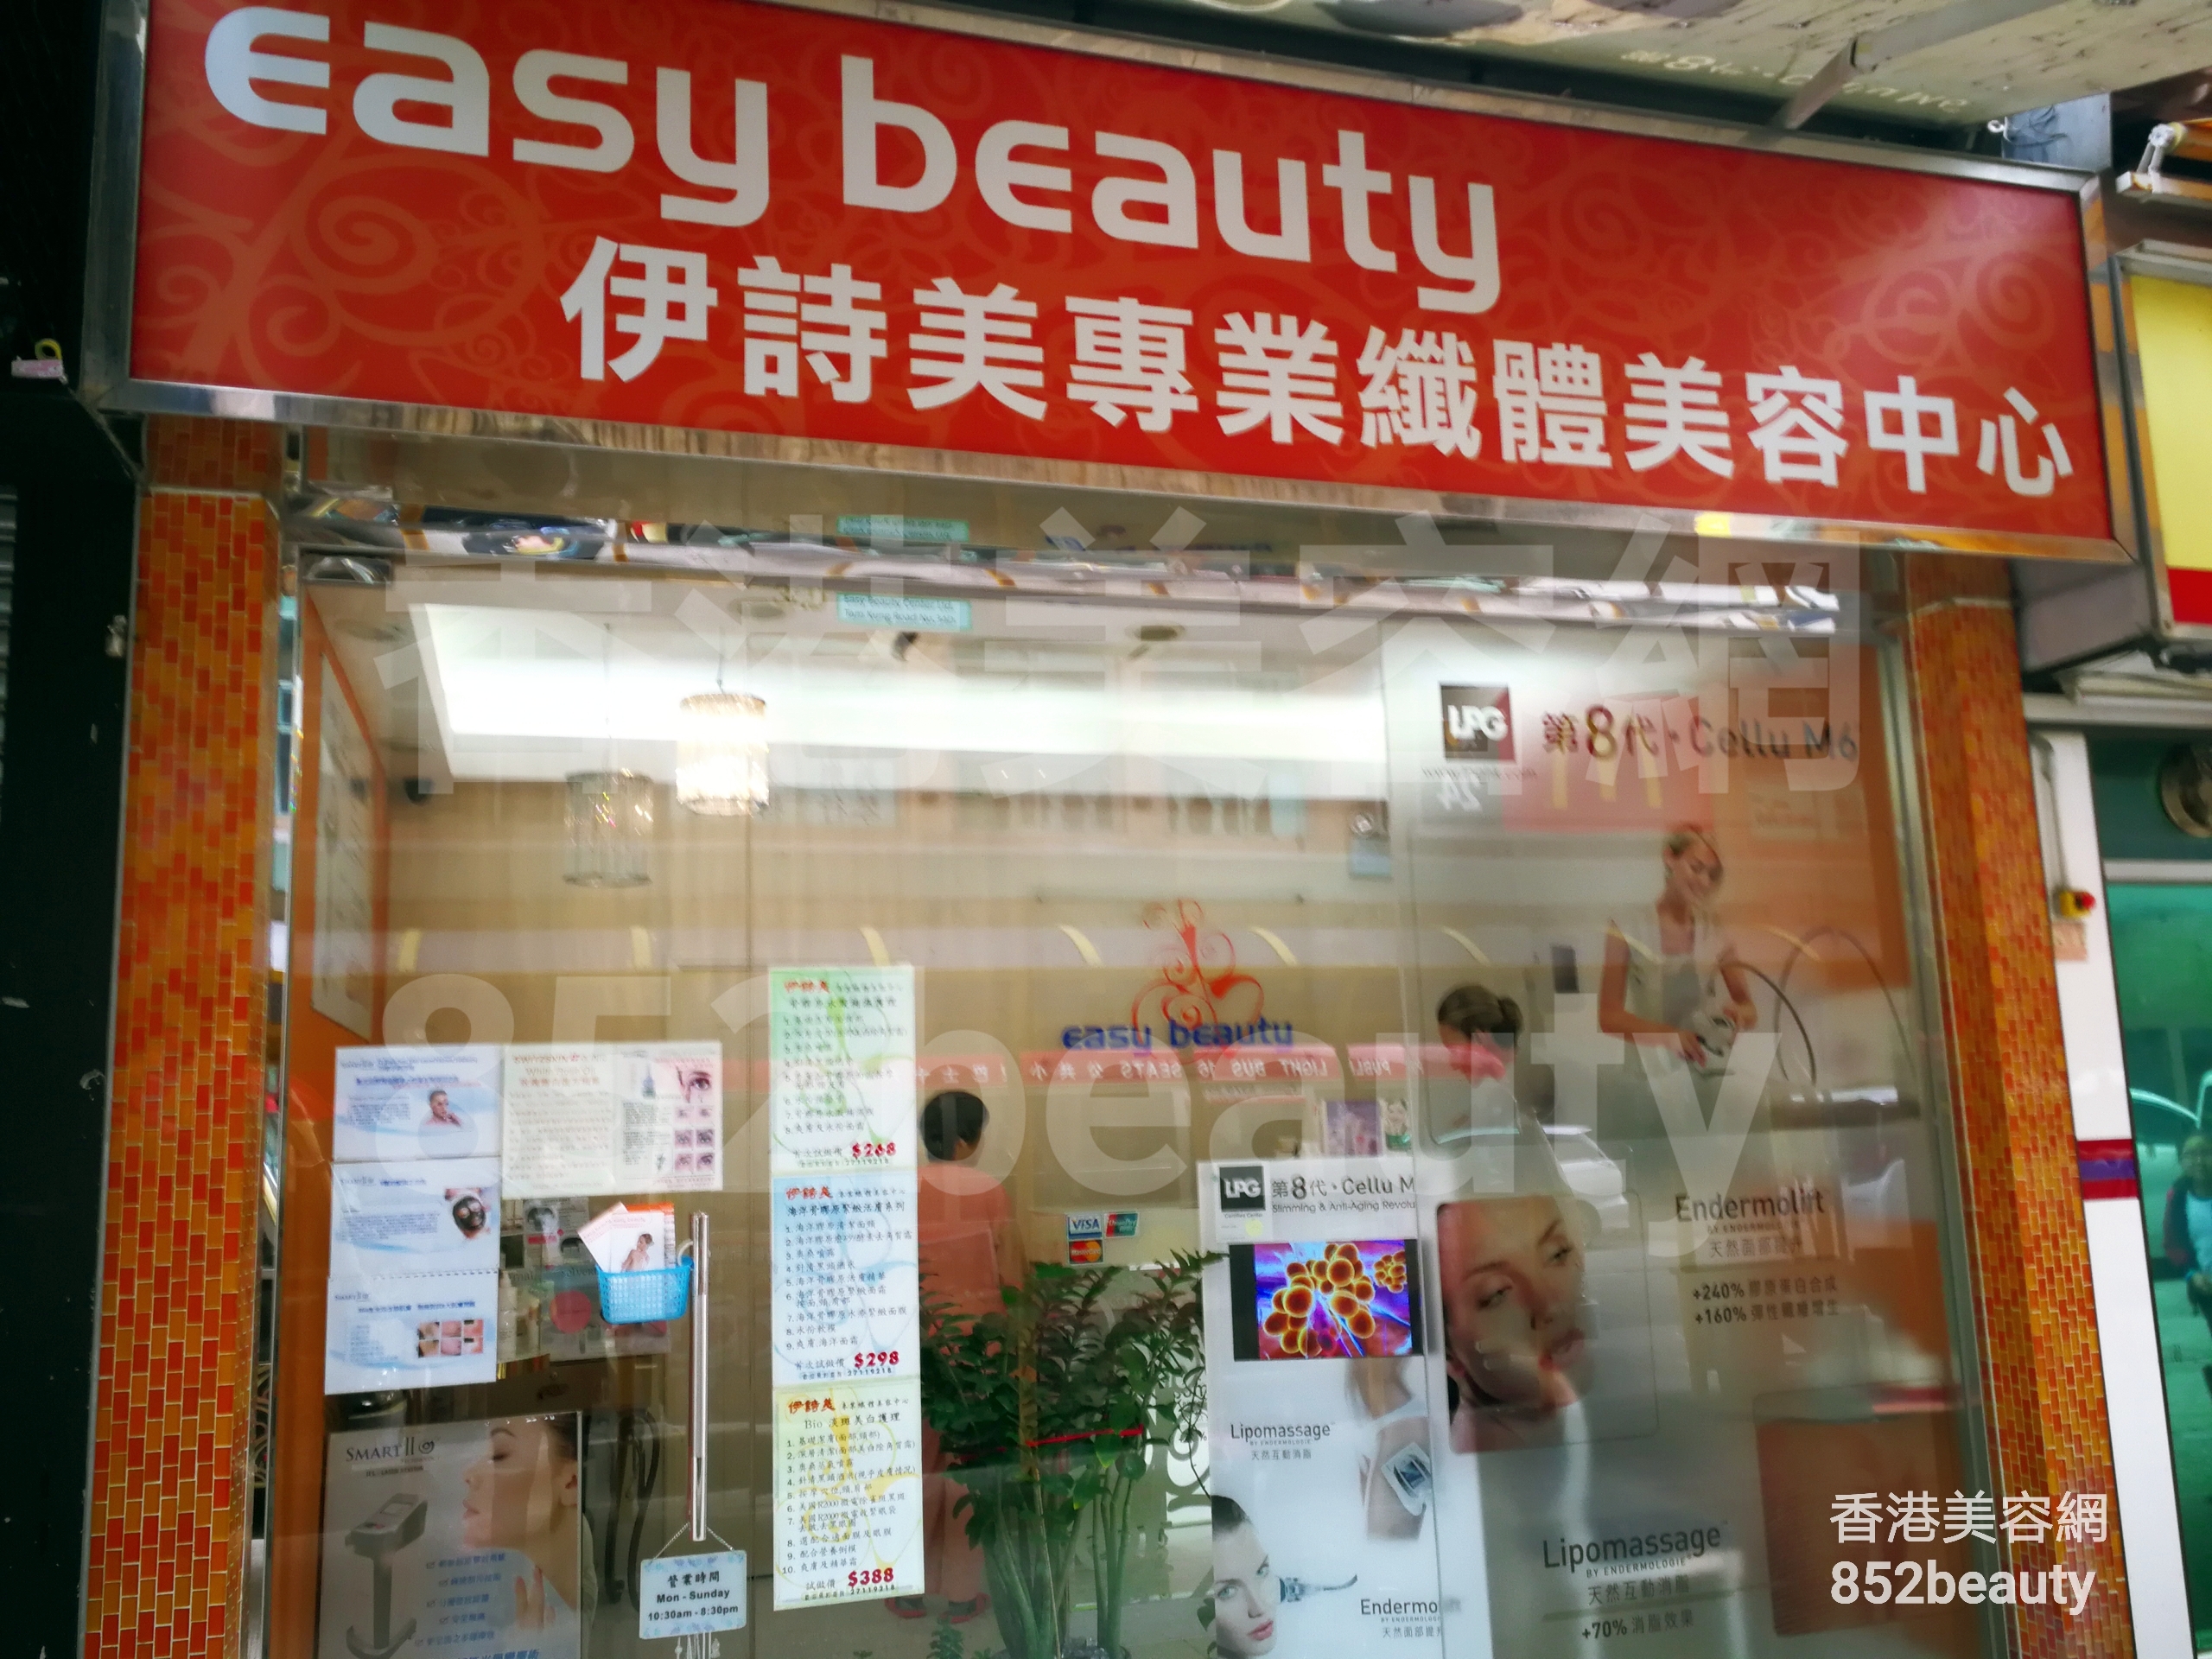 美容院: Easy beauty 伊詩美專業纖體美容中心